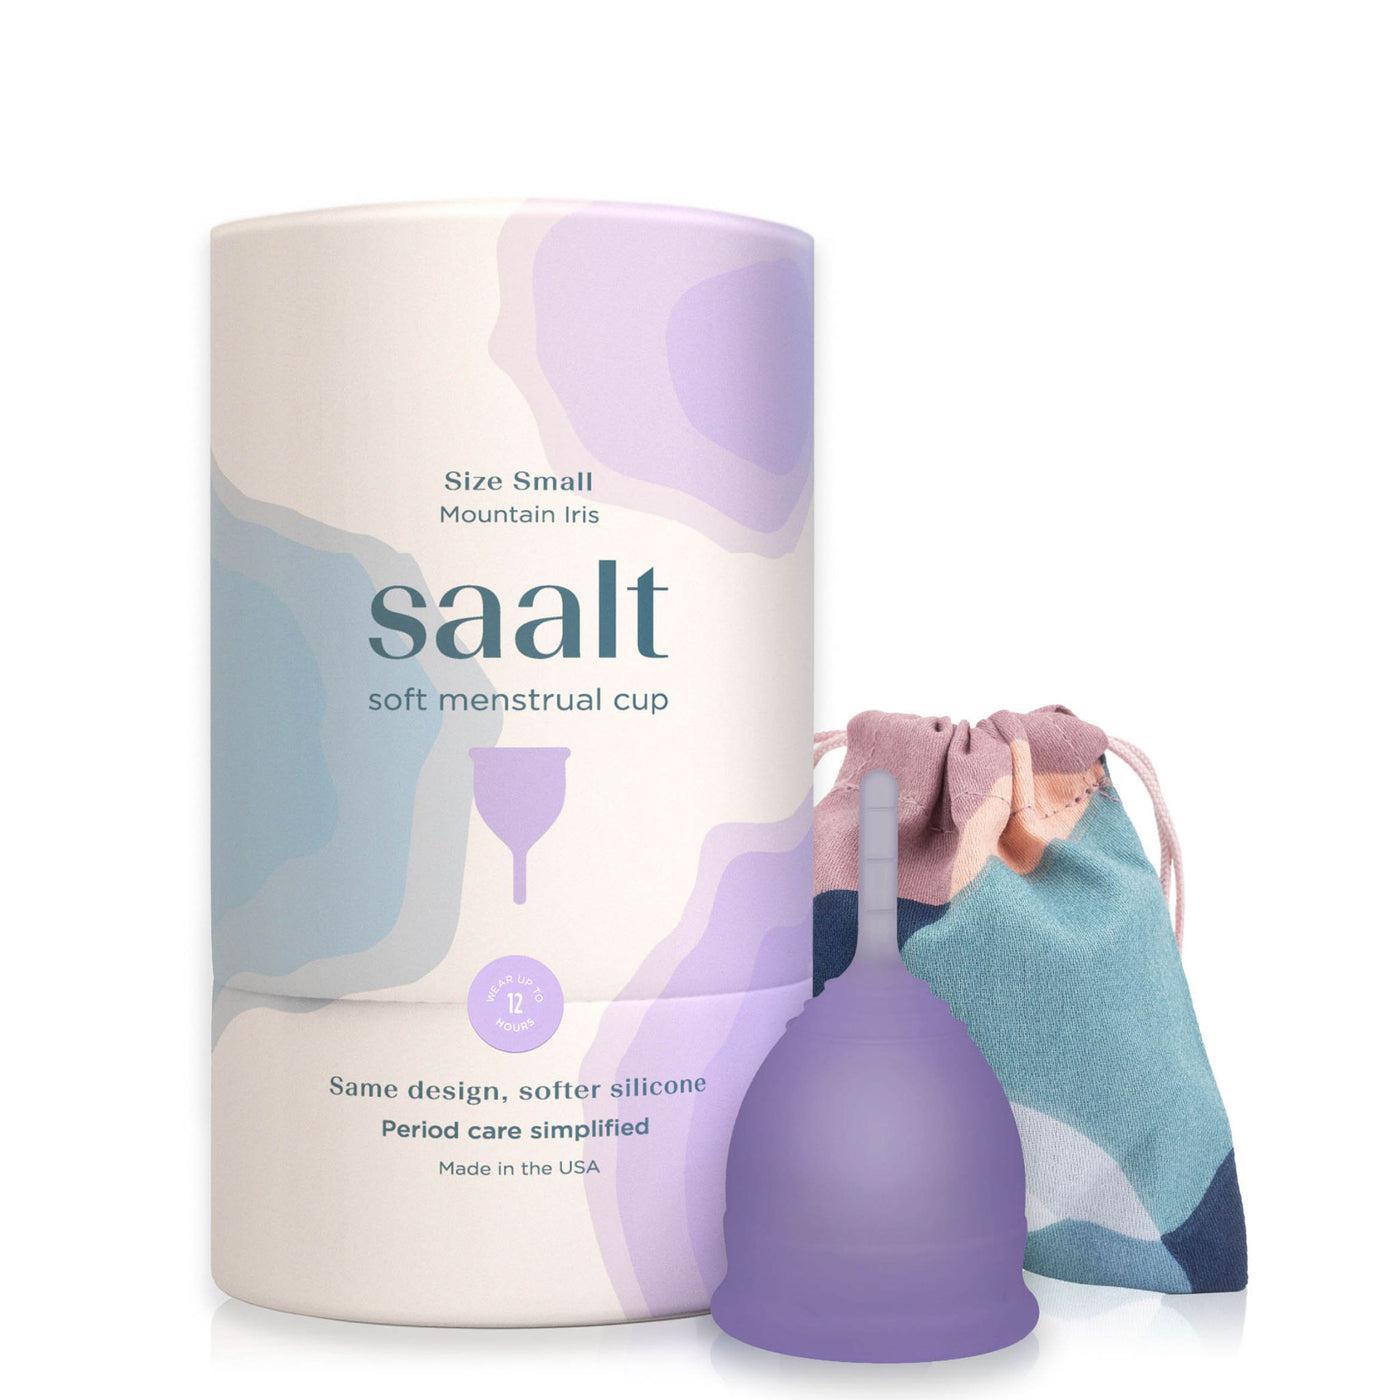 Saalt Soft Menstrual Cup - Size Small